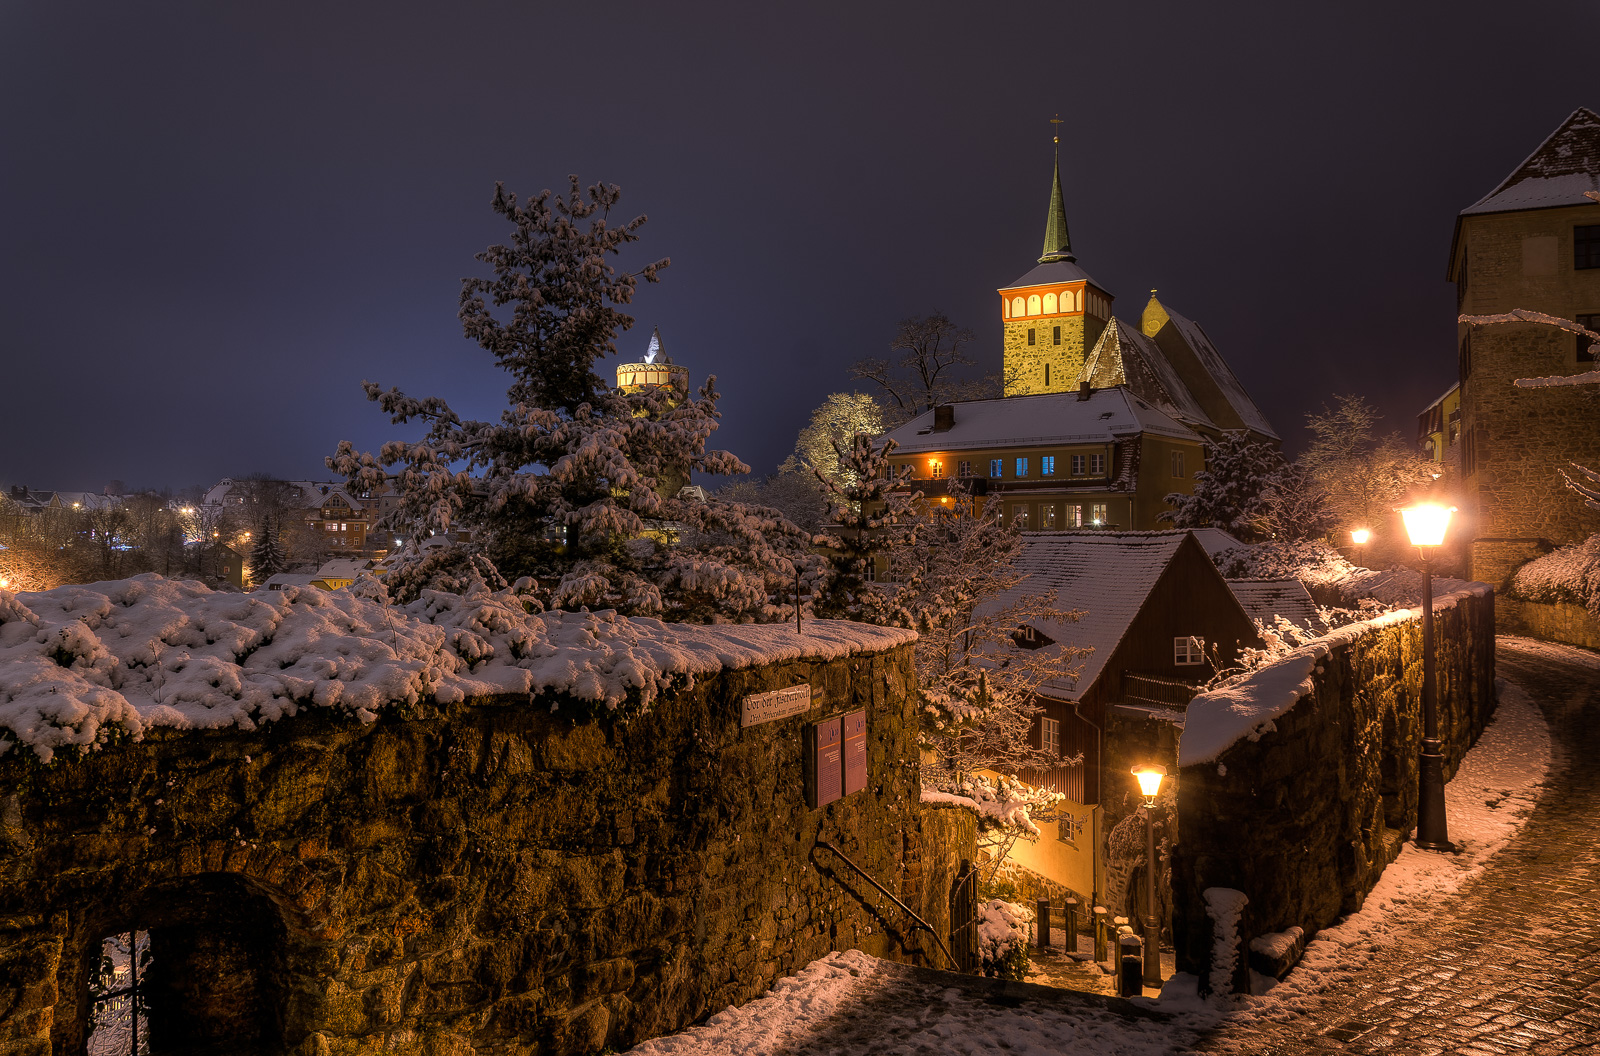 Winterabend An der Fischerpforte in Bautzen mit Blick auf die Michaeliskirche